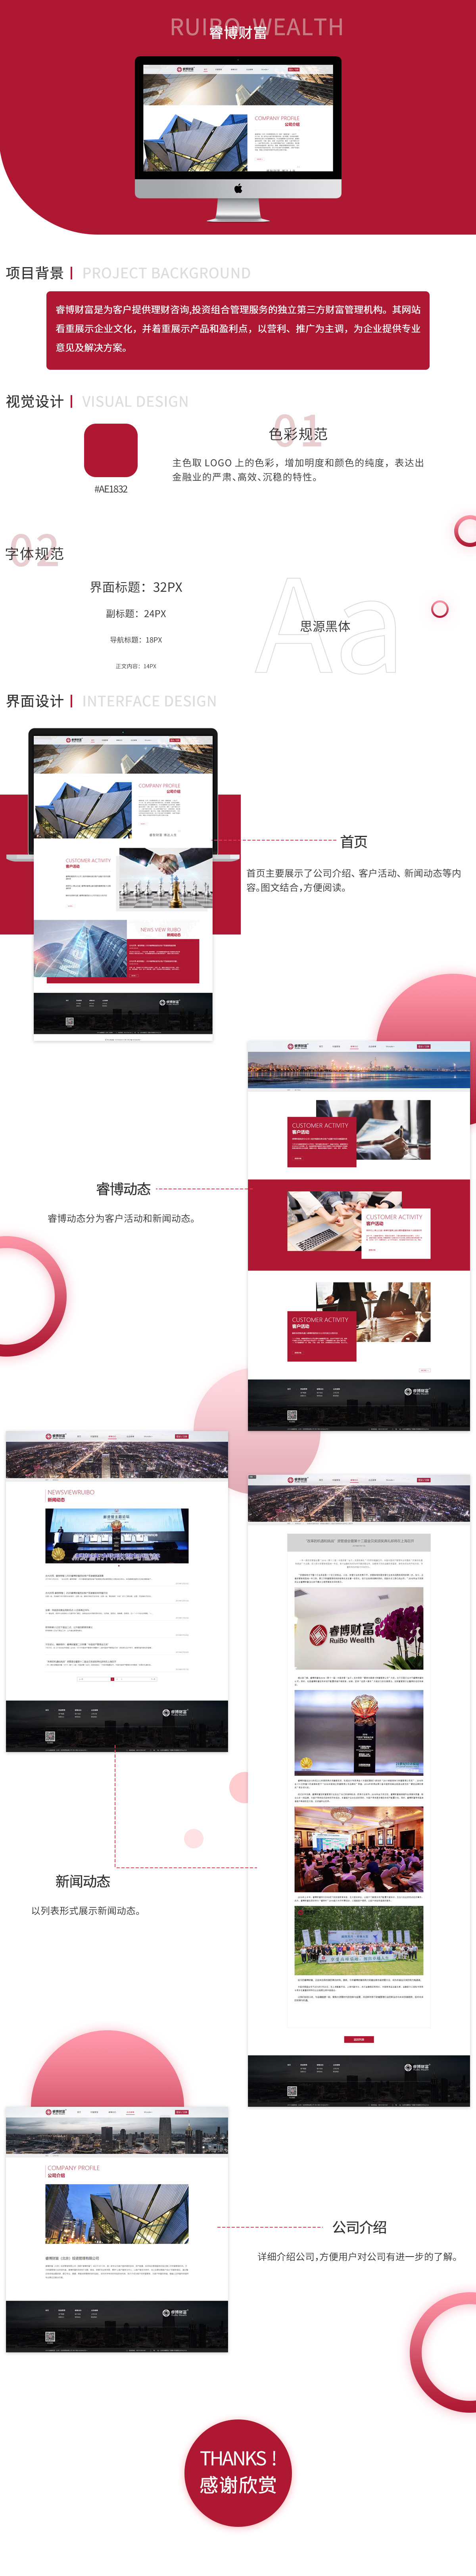 睿博财富（北京）投资管理有限公司品牌网站案例